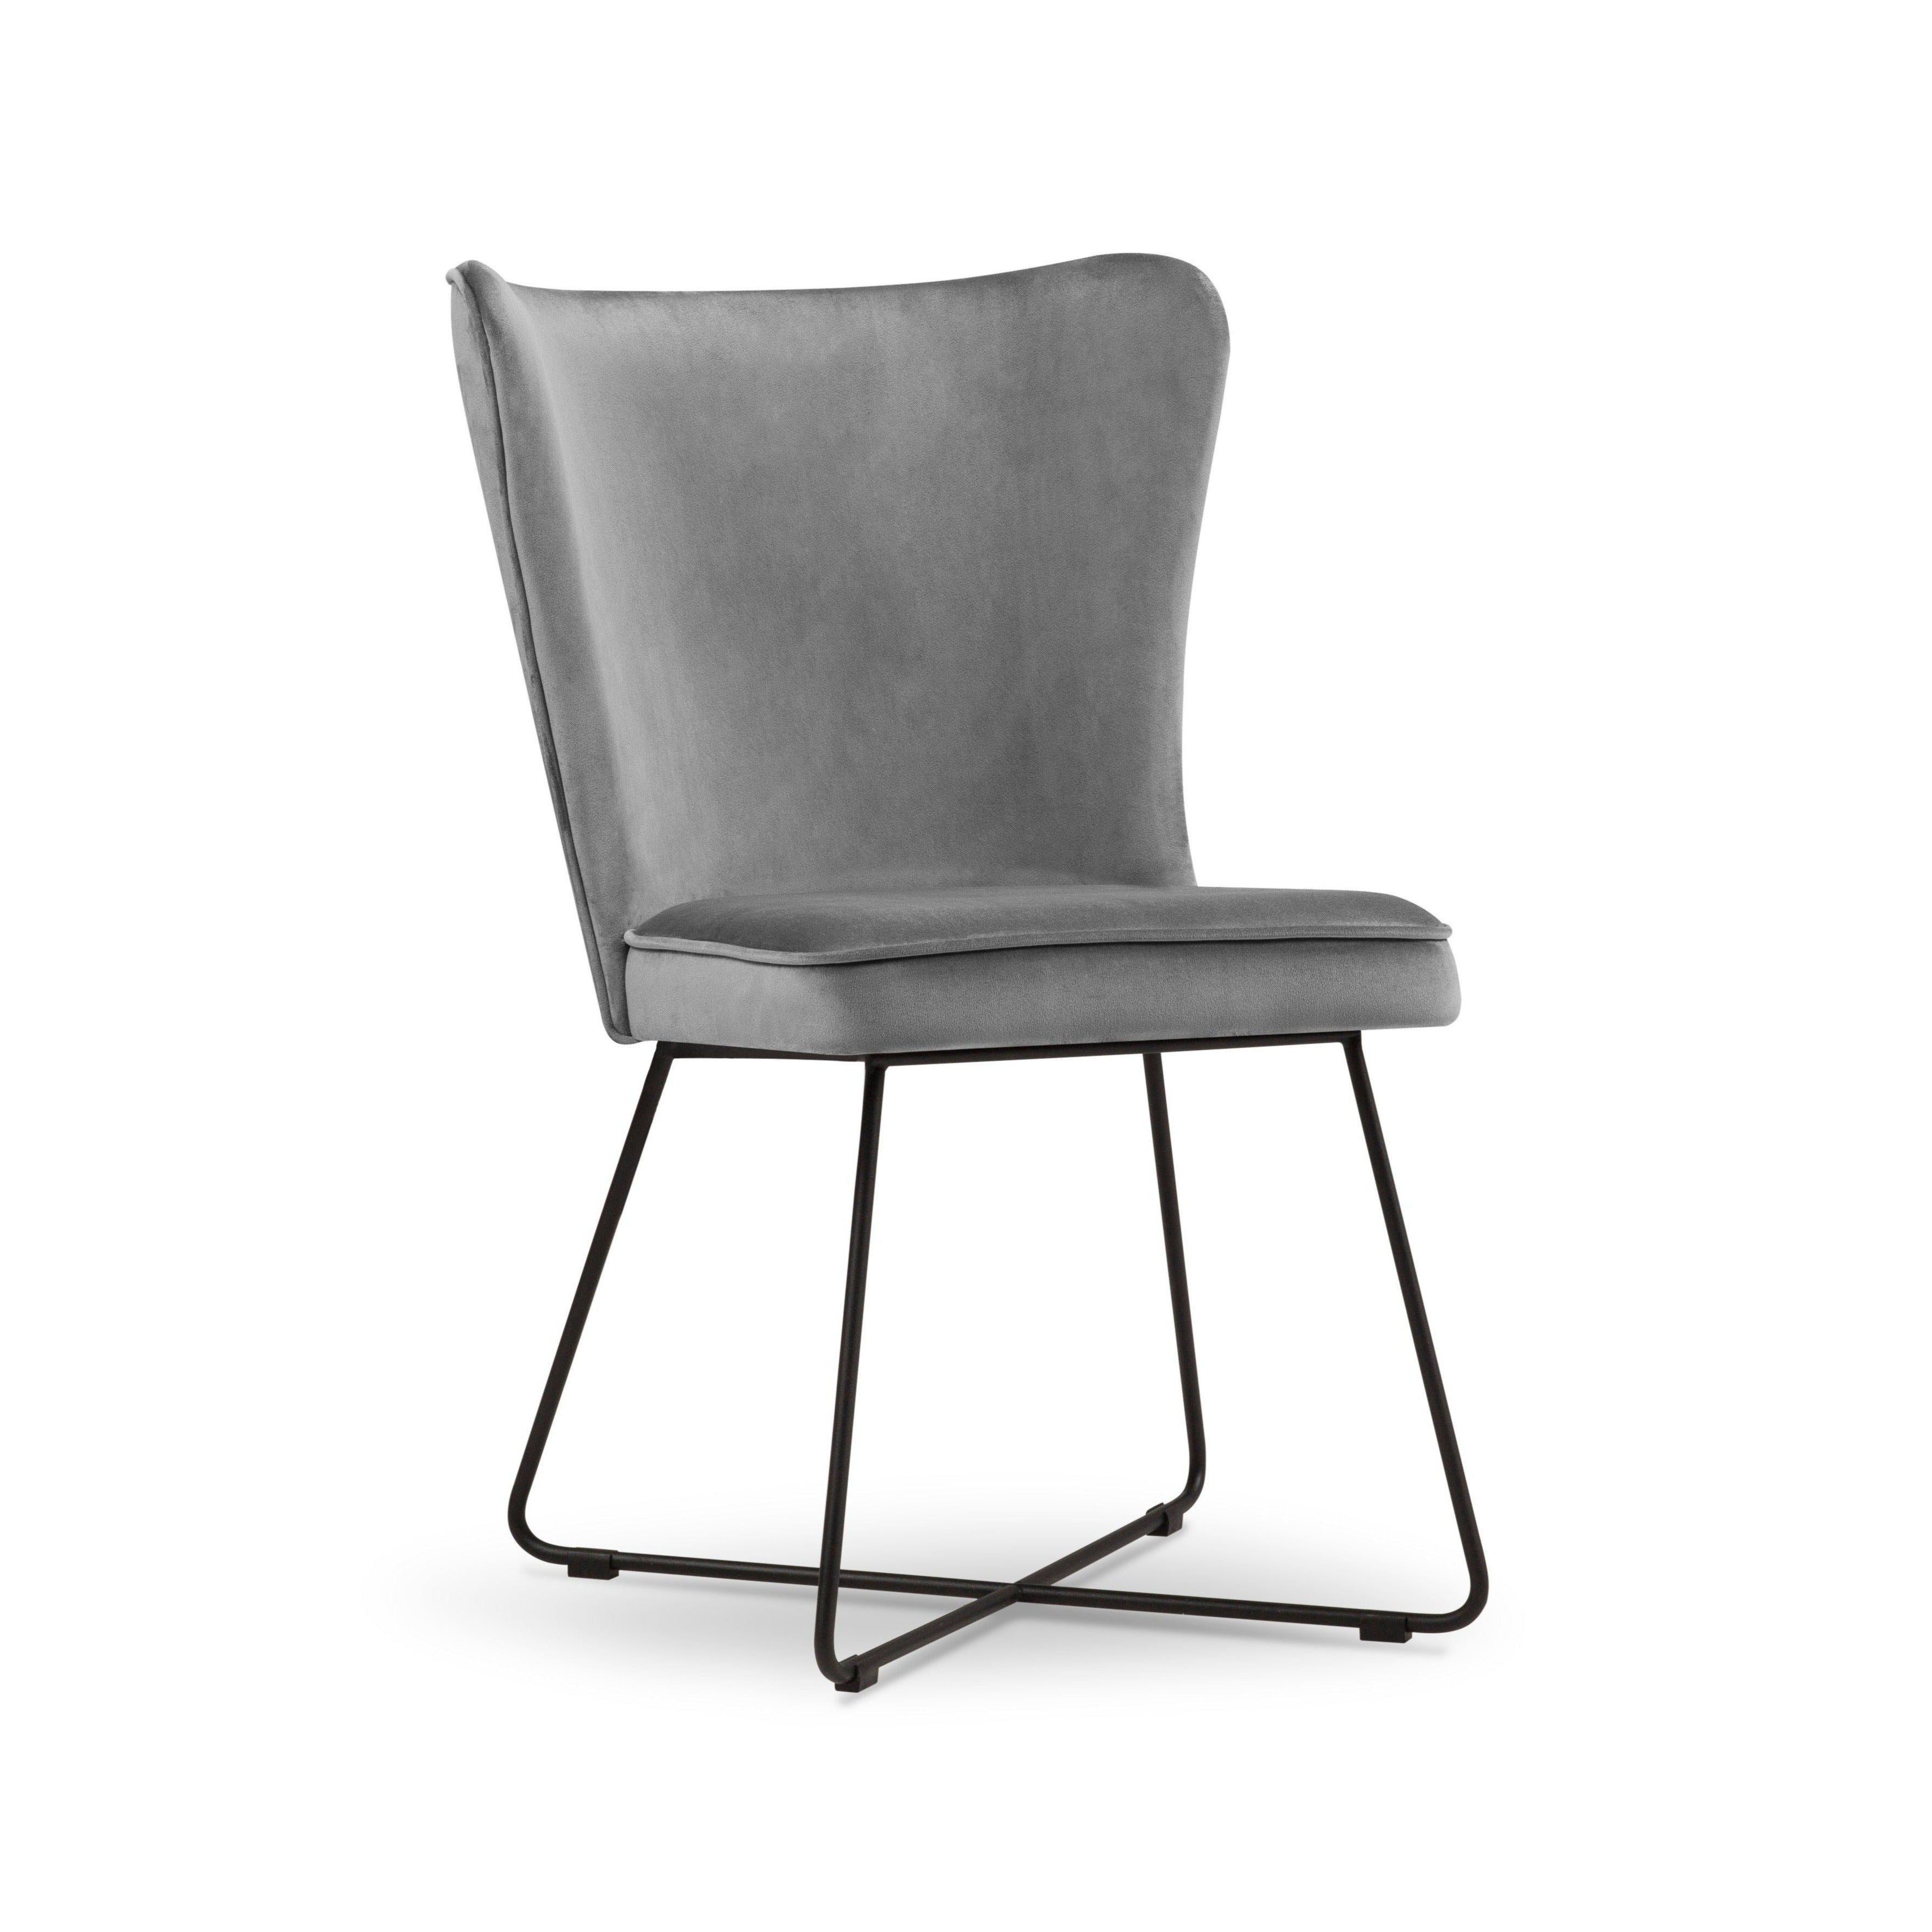 light gray modern chair